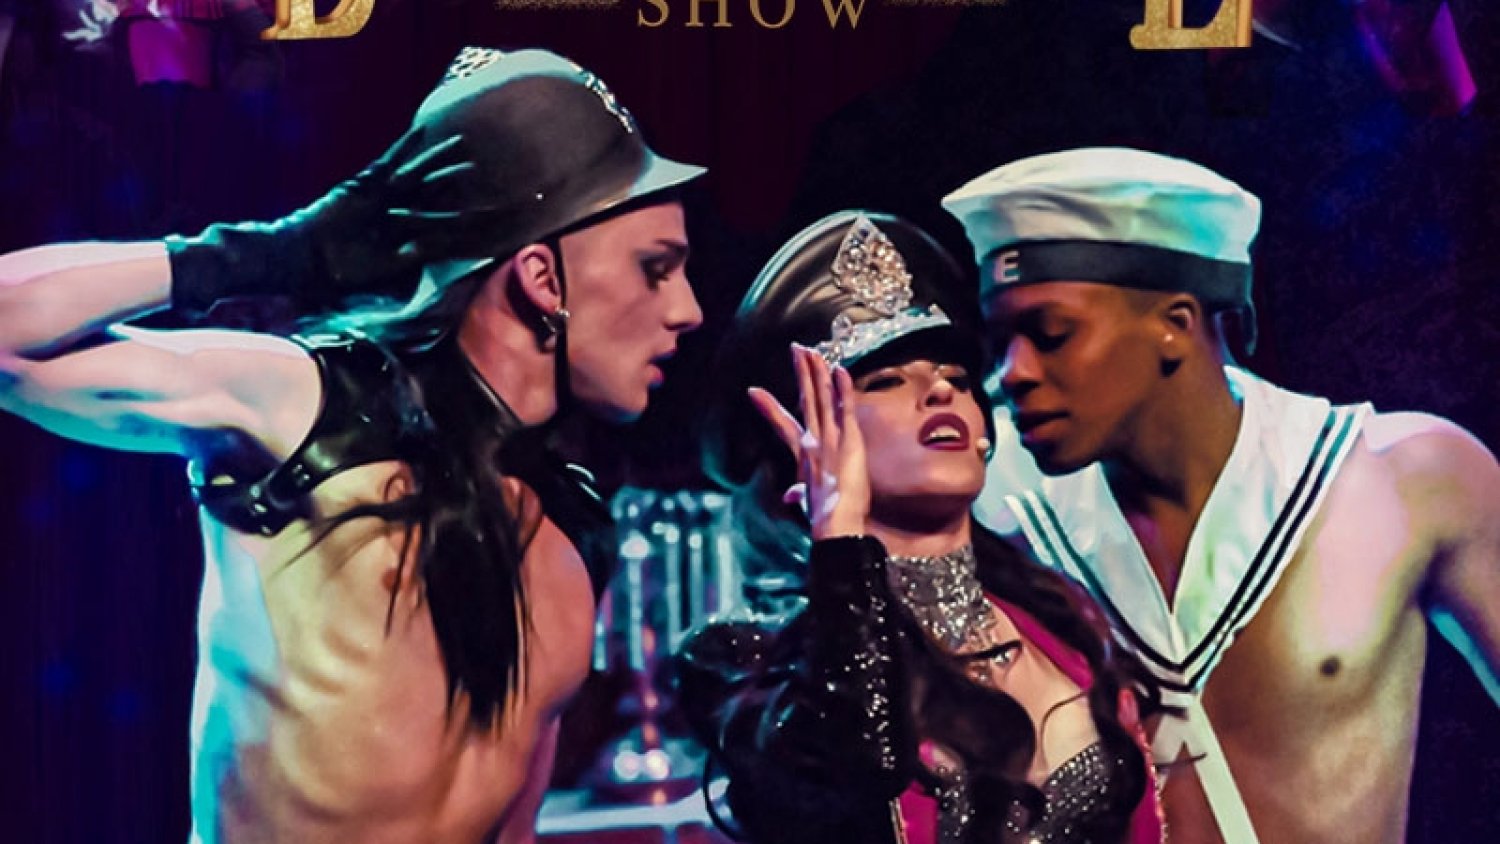 El Auditorio Felipe VI abre la programación de octubre con el Musical Burlesque Show